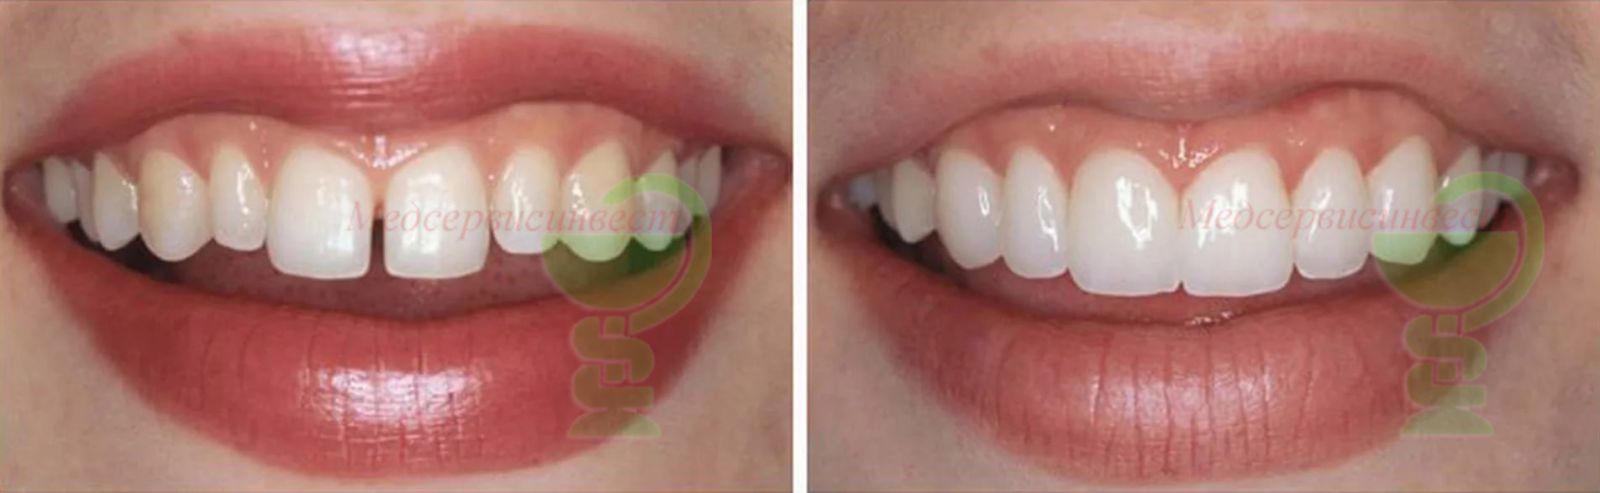 Установка винир на зубы в Минске фото до и после Медсервисинвест